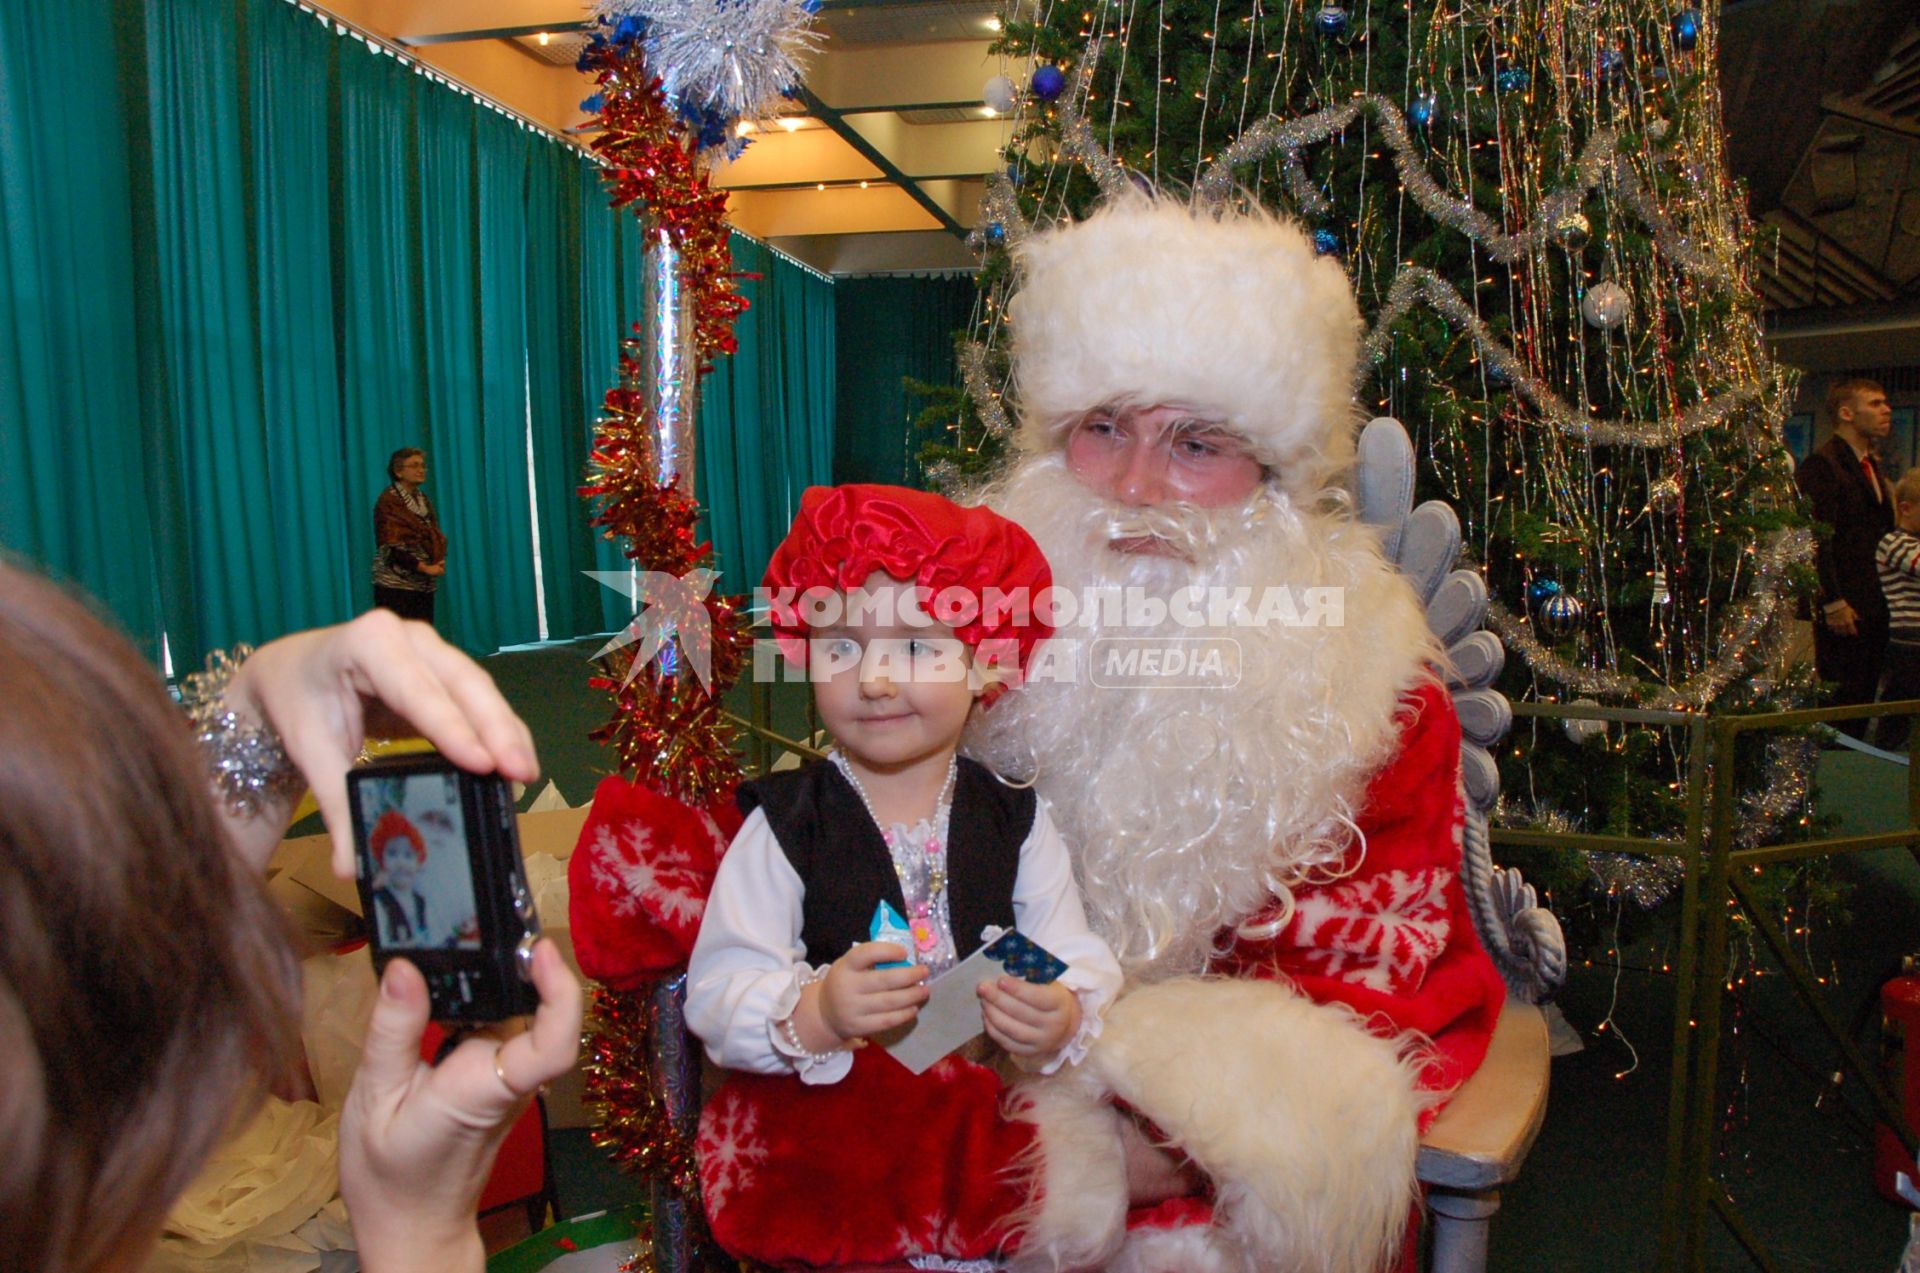 Дети и родители в карнавальных костюмах на Новогодней елке. Девочка в костюме красной шапочки сидит на коленях у Деда Мороза.